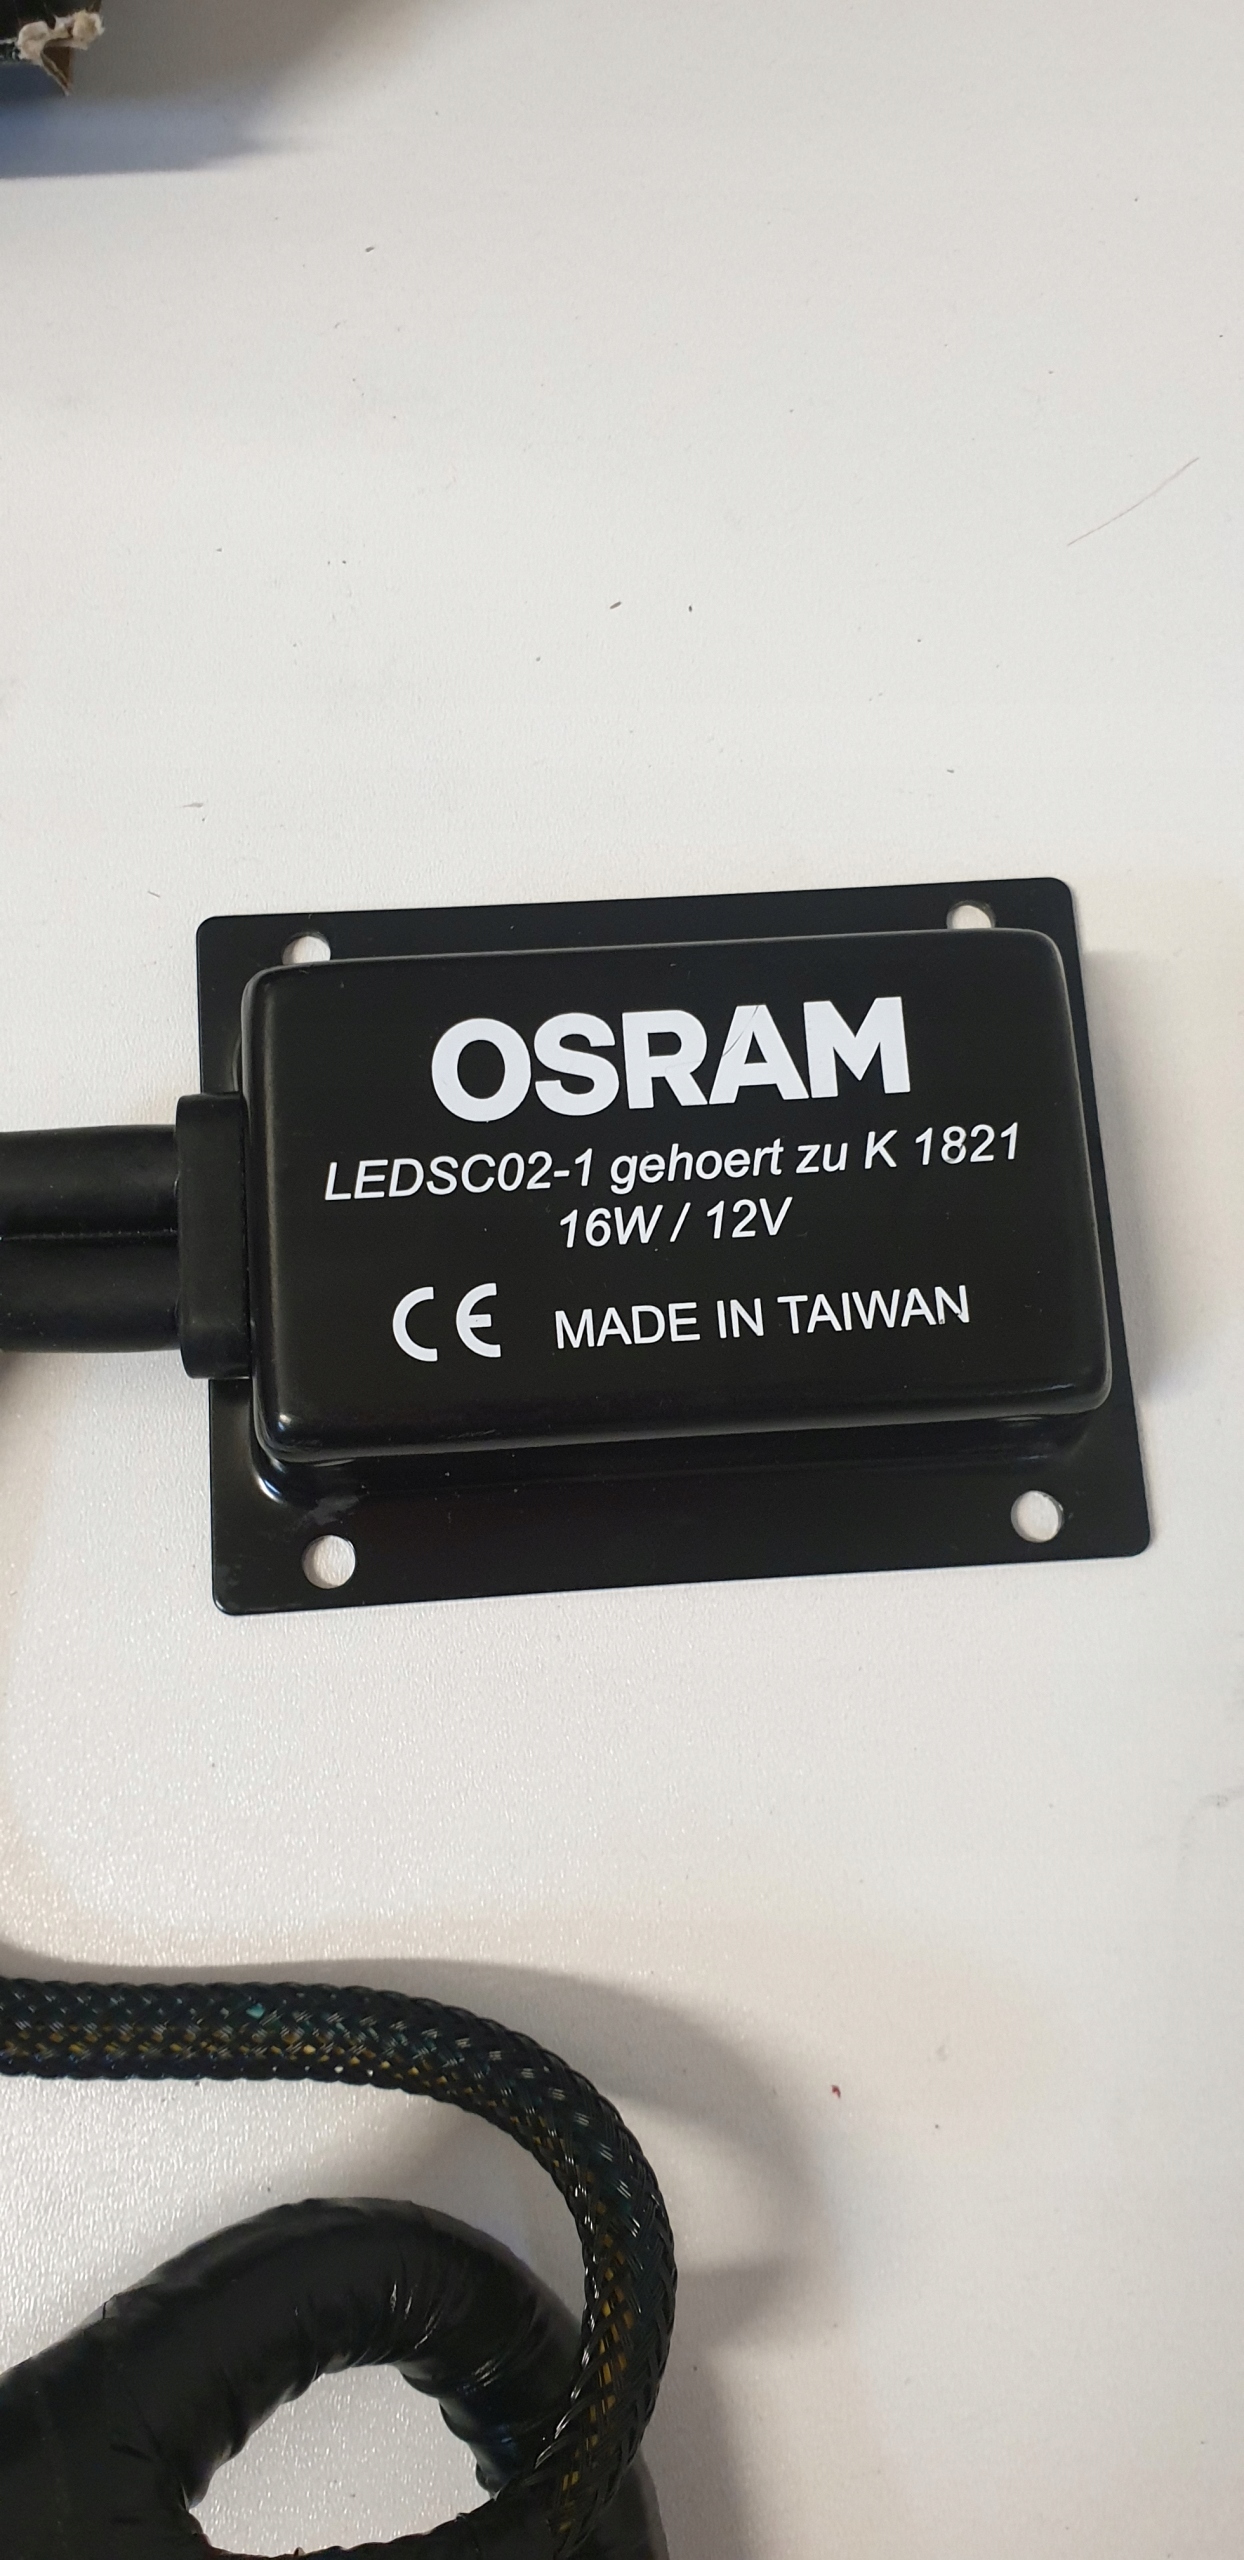 ADAPTER LEDRIVING SMART CANBUS OSRAM LEDSC02-1 LEDSC02 za 89 zł z